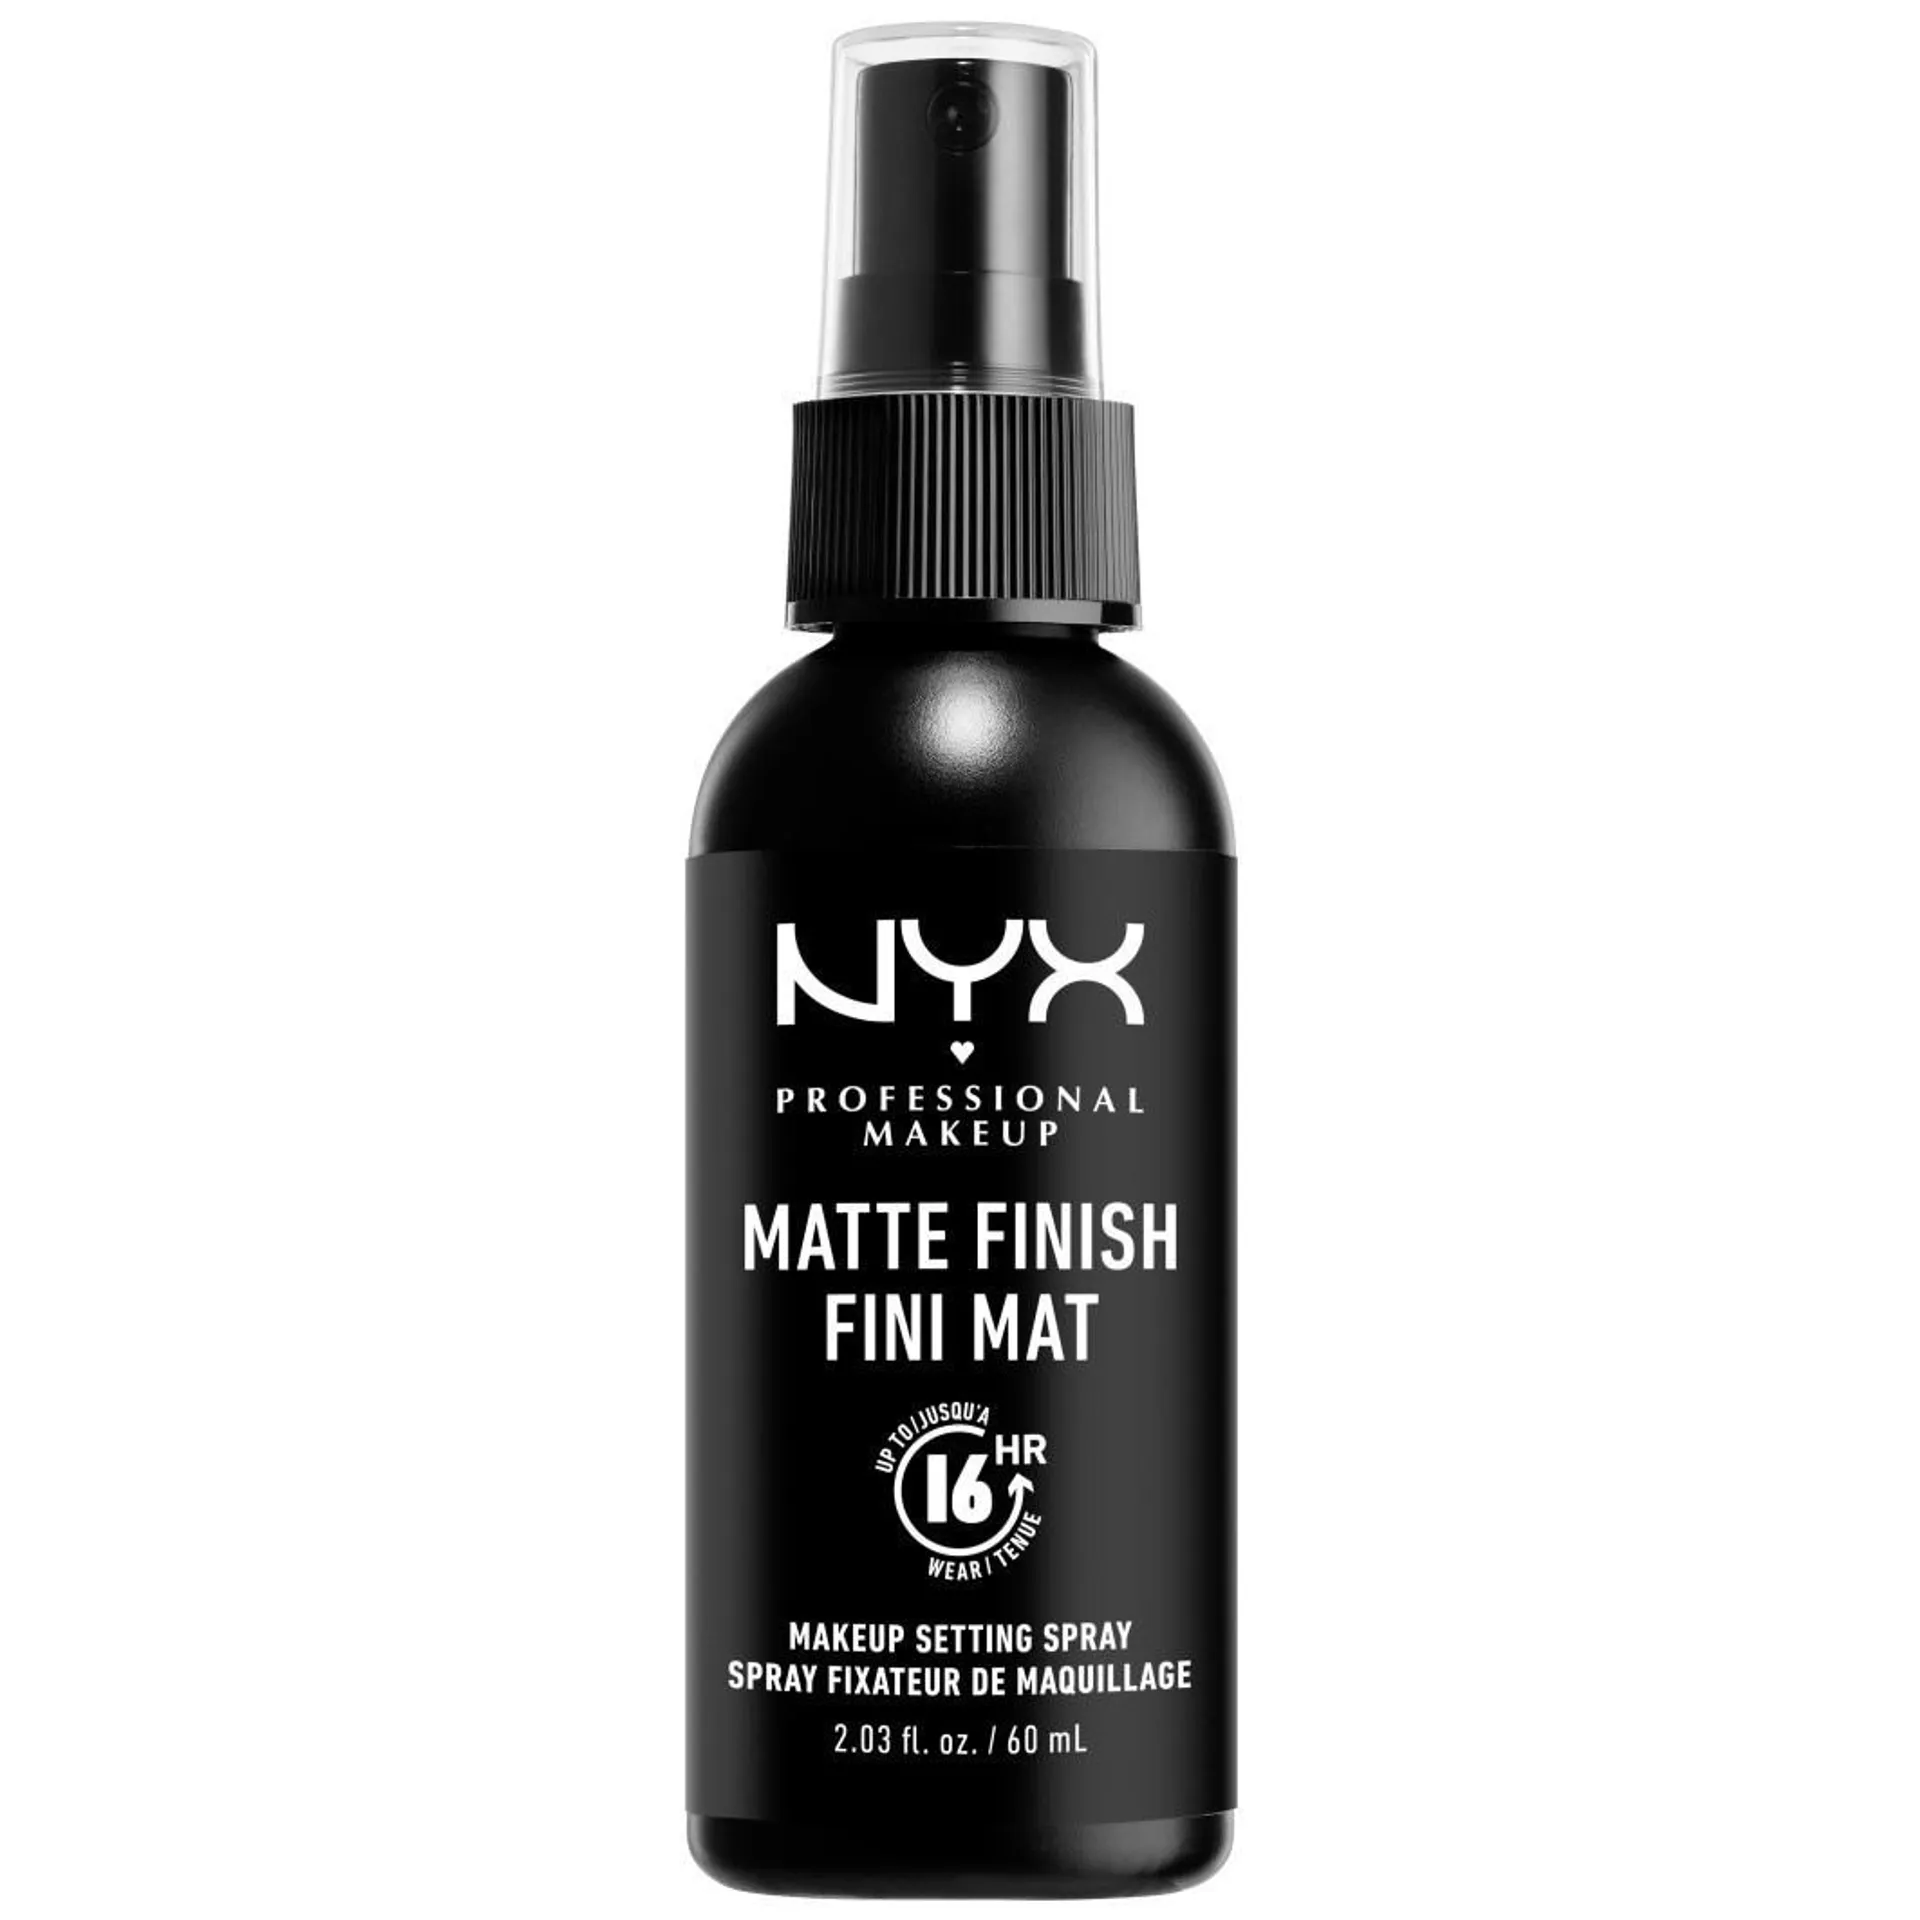 NYX Professional Makeup Pride Makeup Makeup Setting Spray Maxi Matte Finish